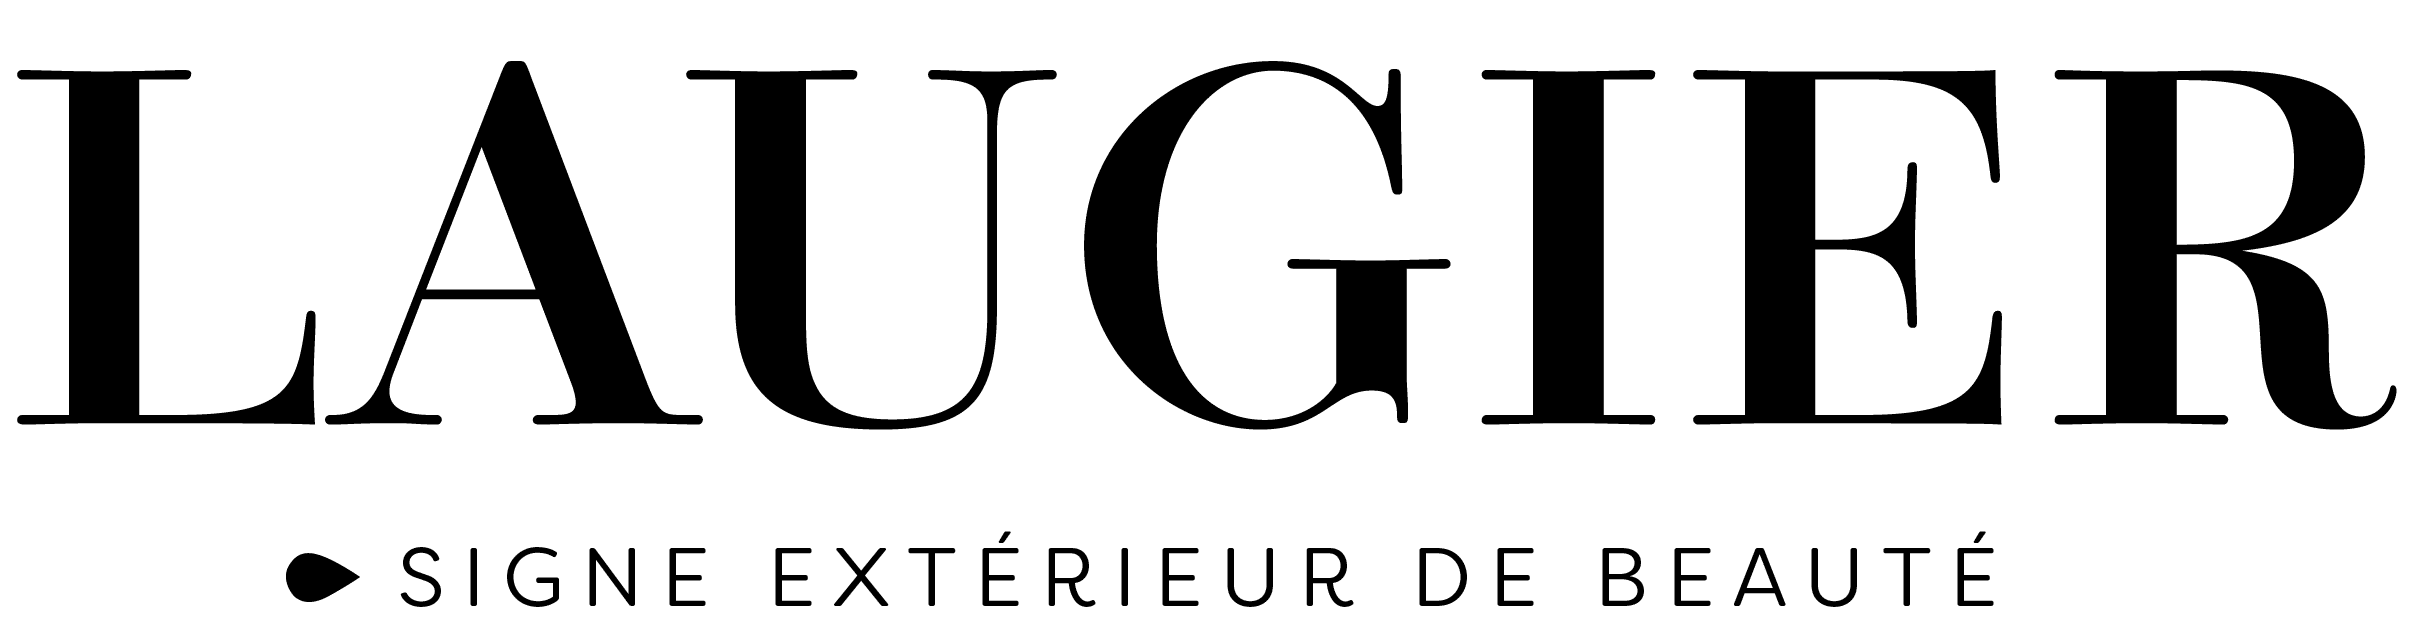 institut-laugier-supernail-logo-1584018887